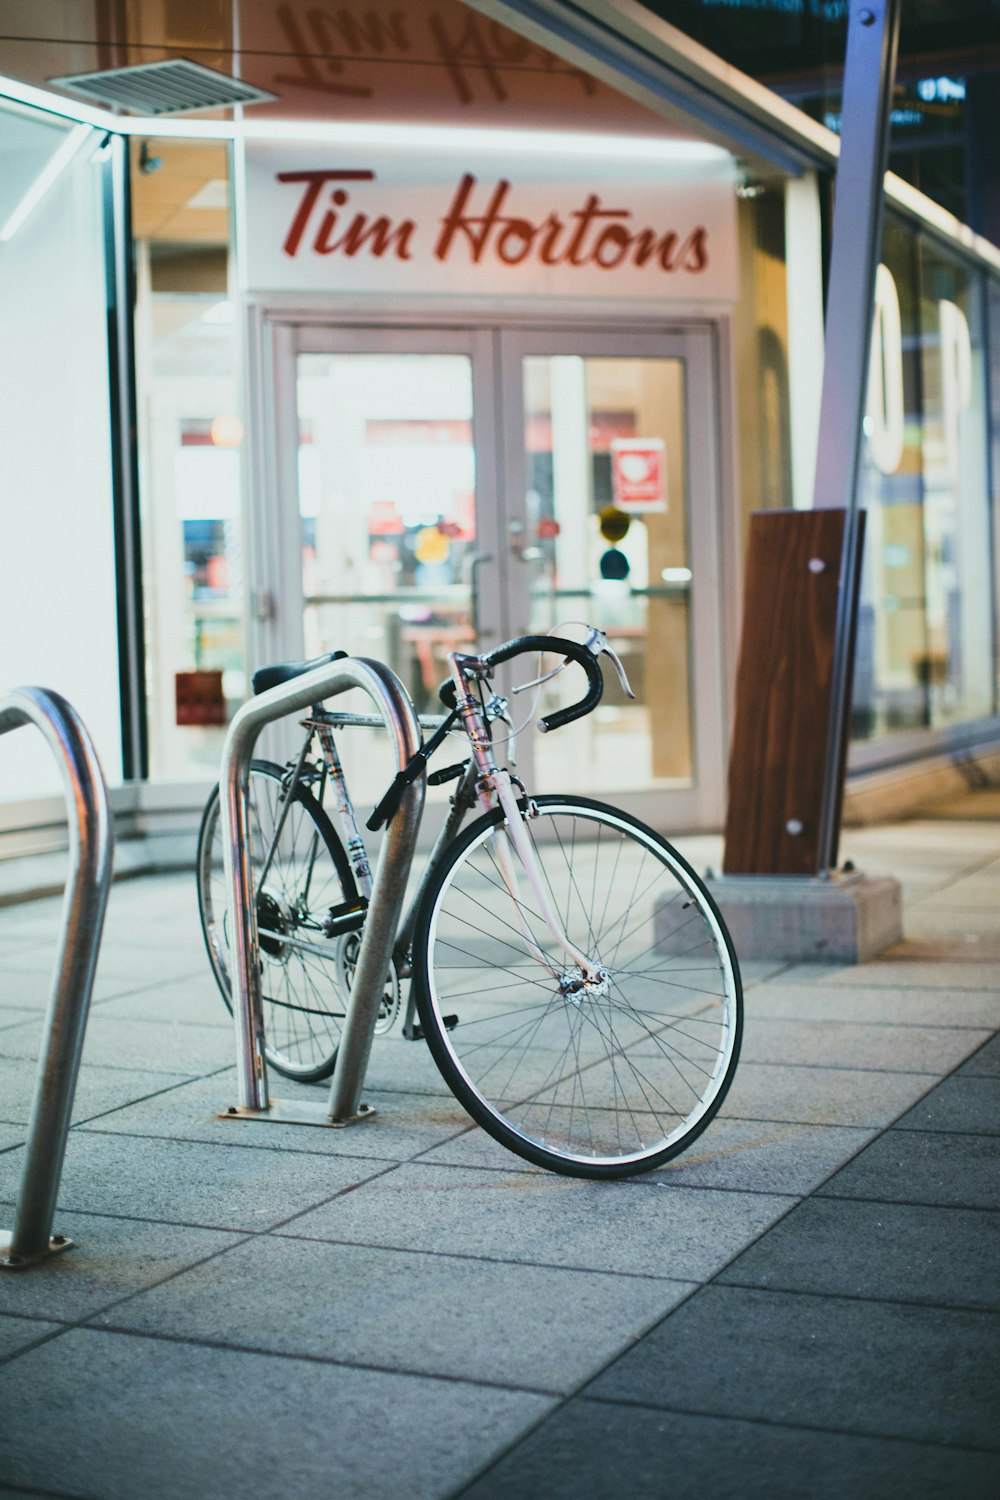 Bicicleta urbana blanca estacionada junto a barandillas de metal blanco durante el día